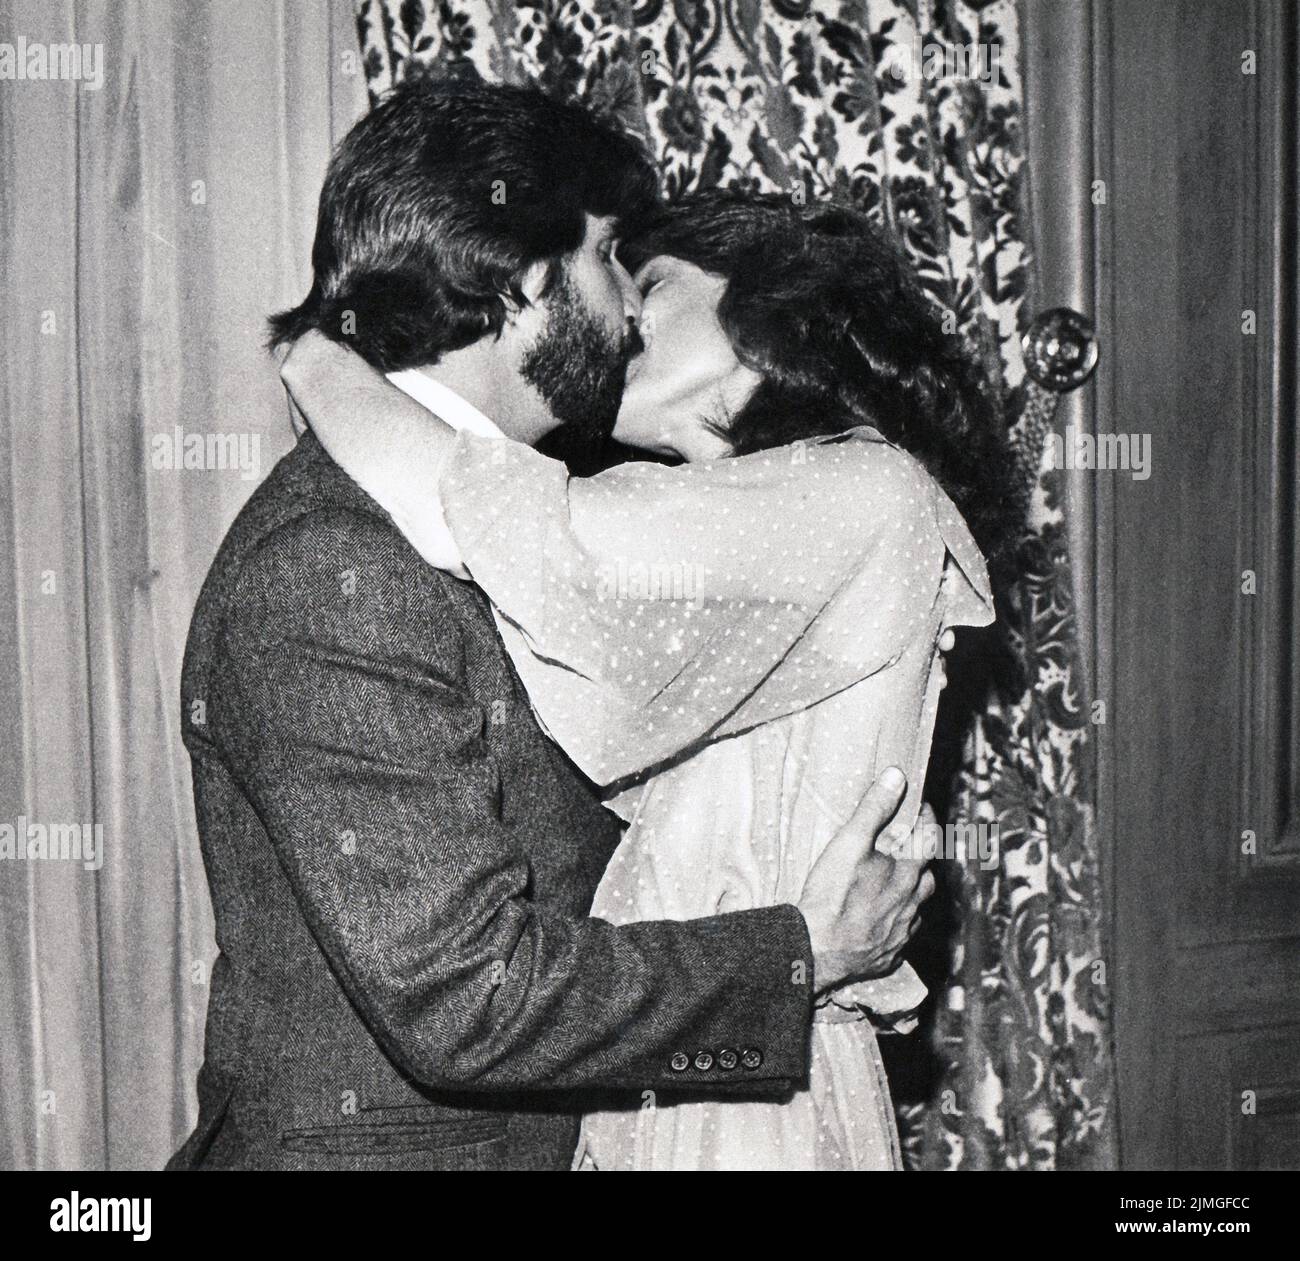 La star de la télévision Henry Winkler embrasse sa nouvelle femme, Stacey Weitzman. Lors d'un appel photo dans un hôtel de Midtown Manhattan peu après leur mariage à 5 mai 1978. Banque D'Images